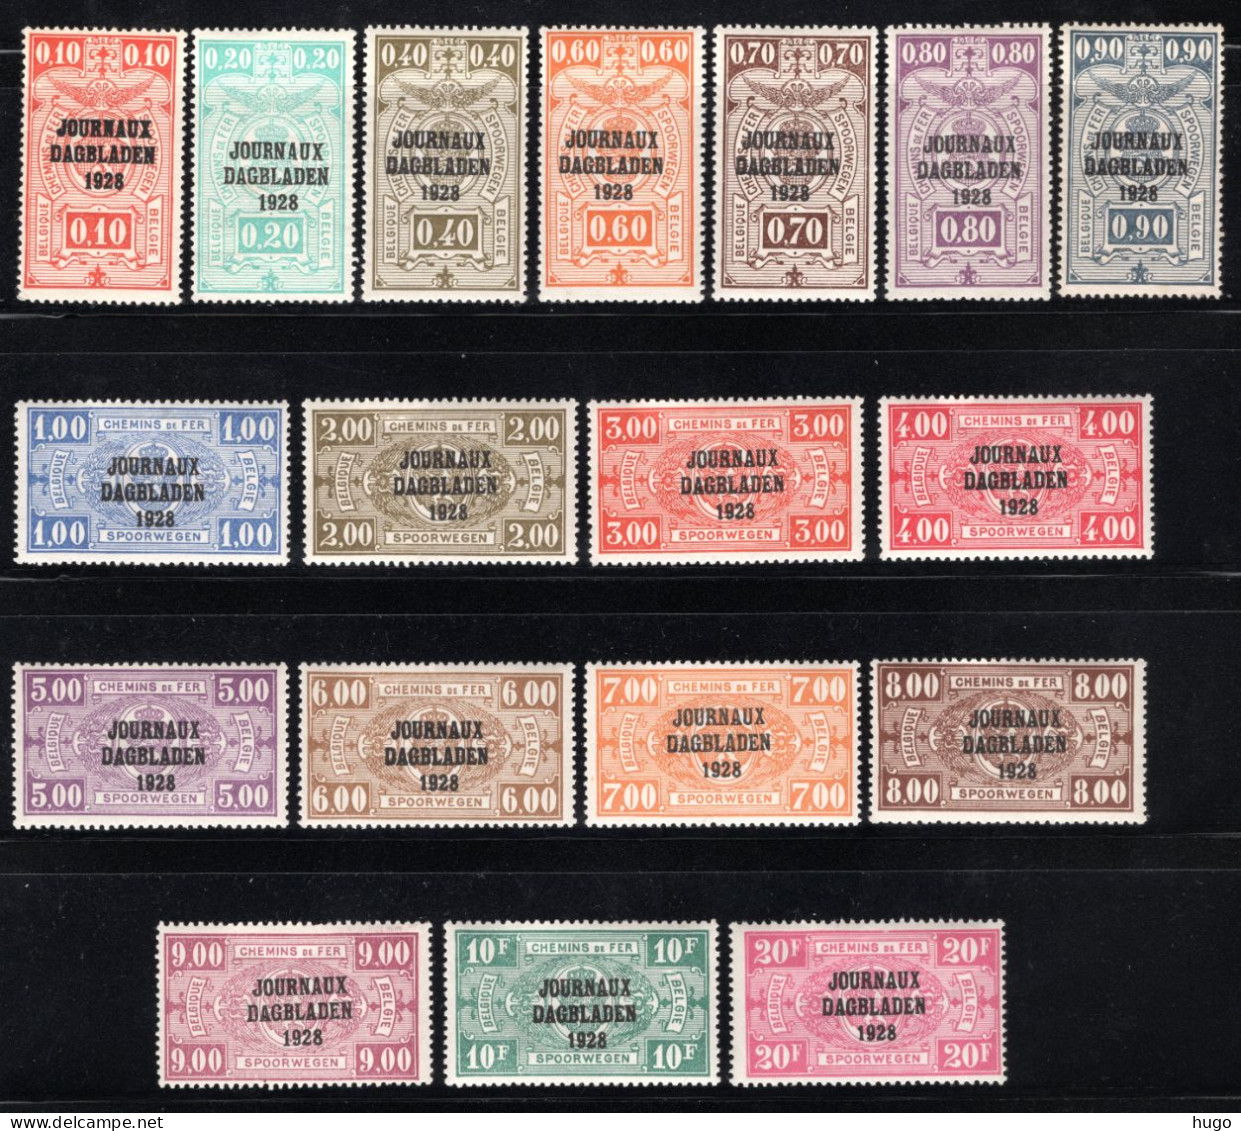 JO1/18 MNH 1928 - Spoorwegzegels JOURNAUX - DAGBLADEN 1928 - Periódicos [JO]